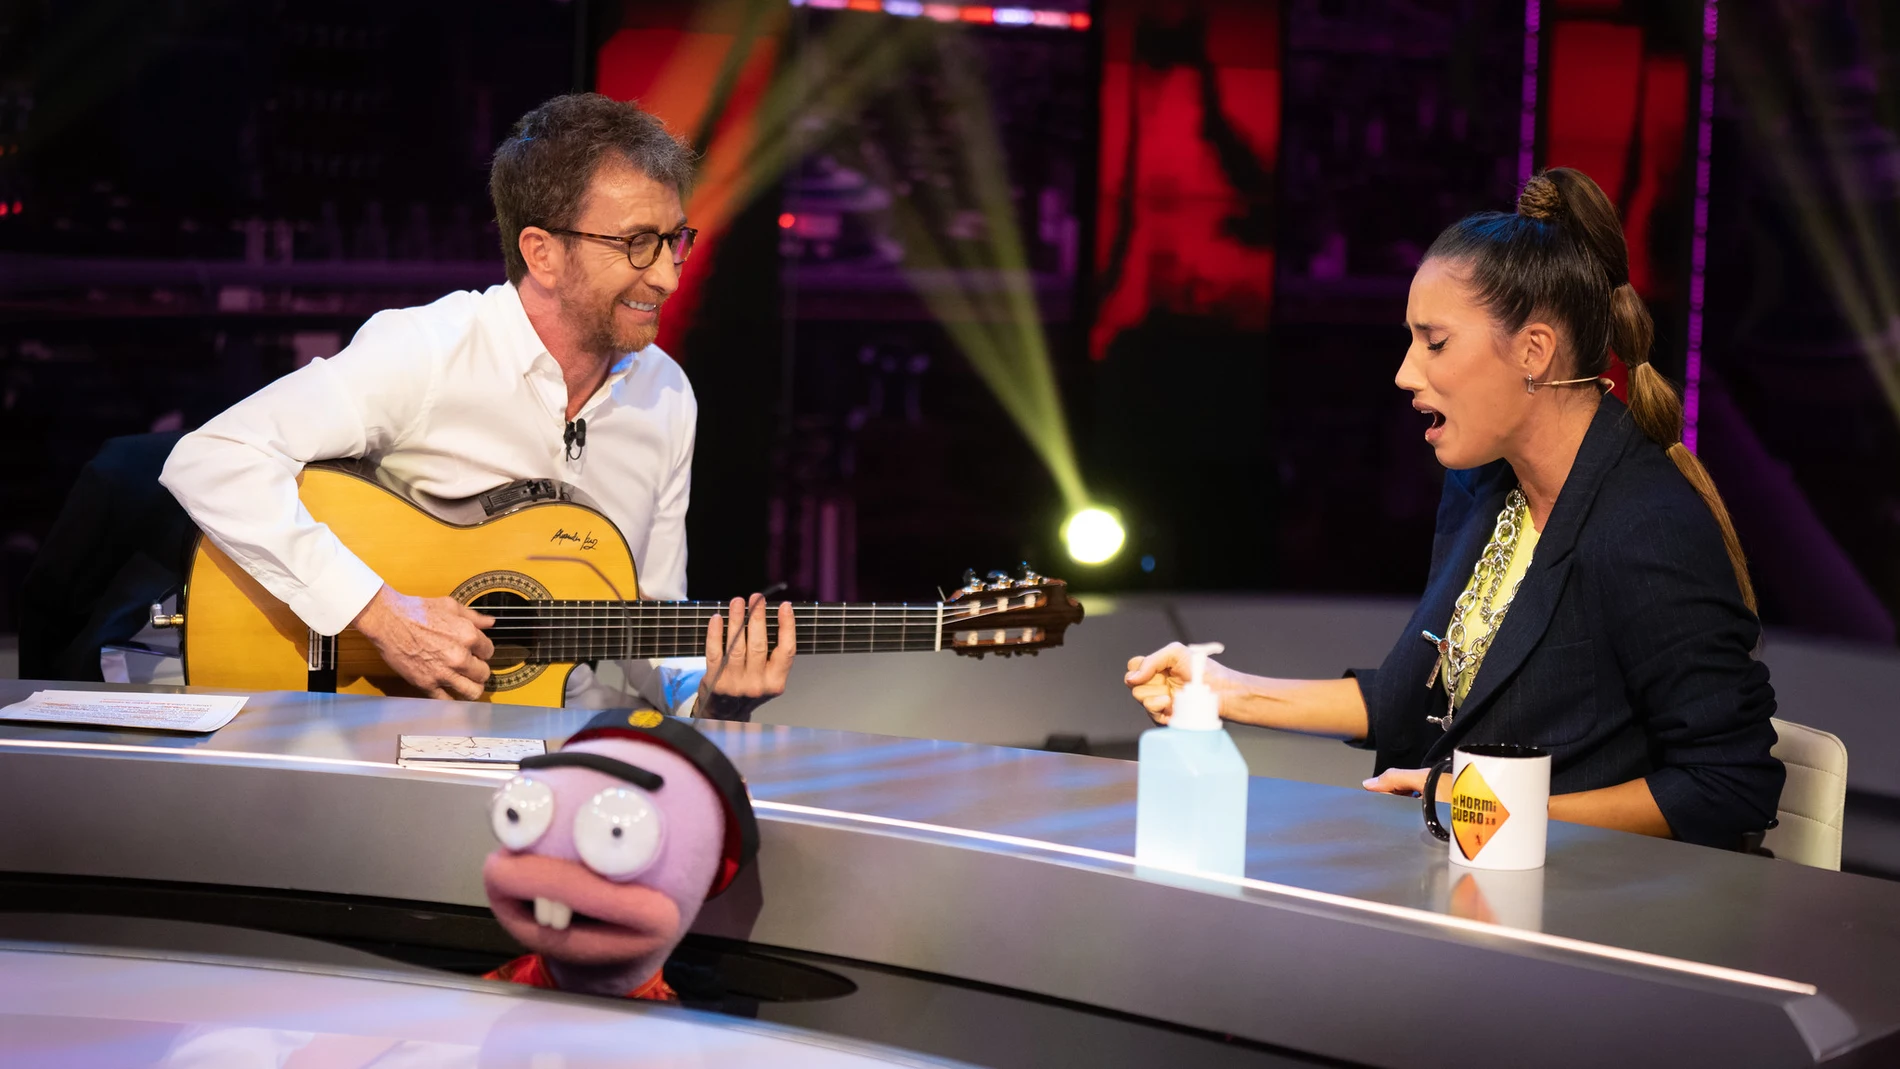 India Martínez canta en directo 'La gitana' con Pablo Motos a la guitarra